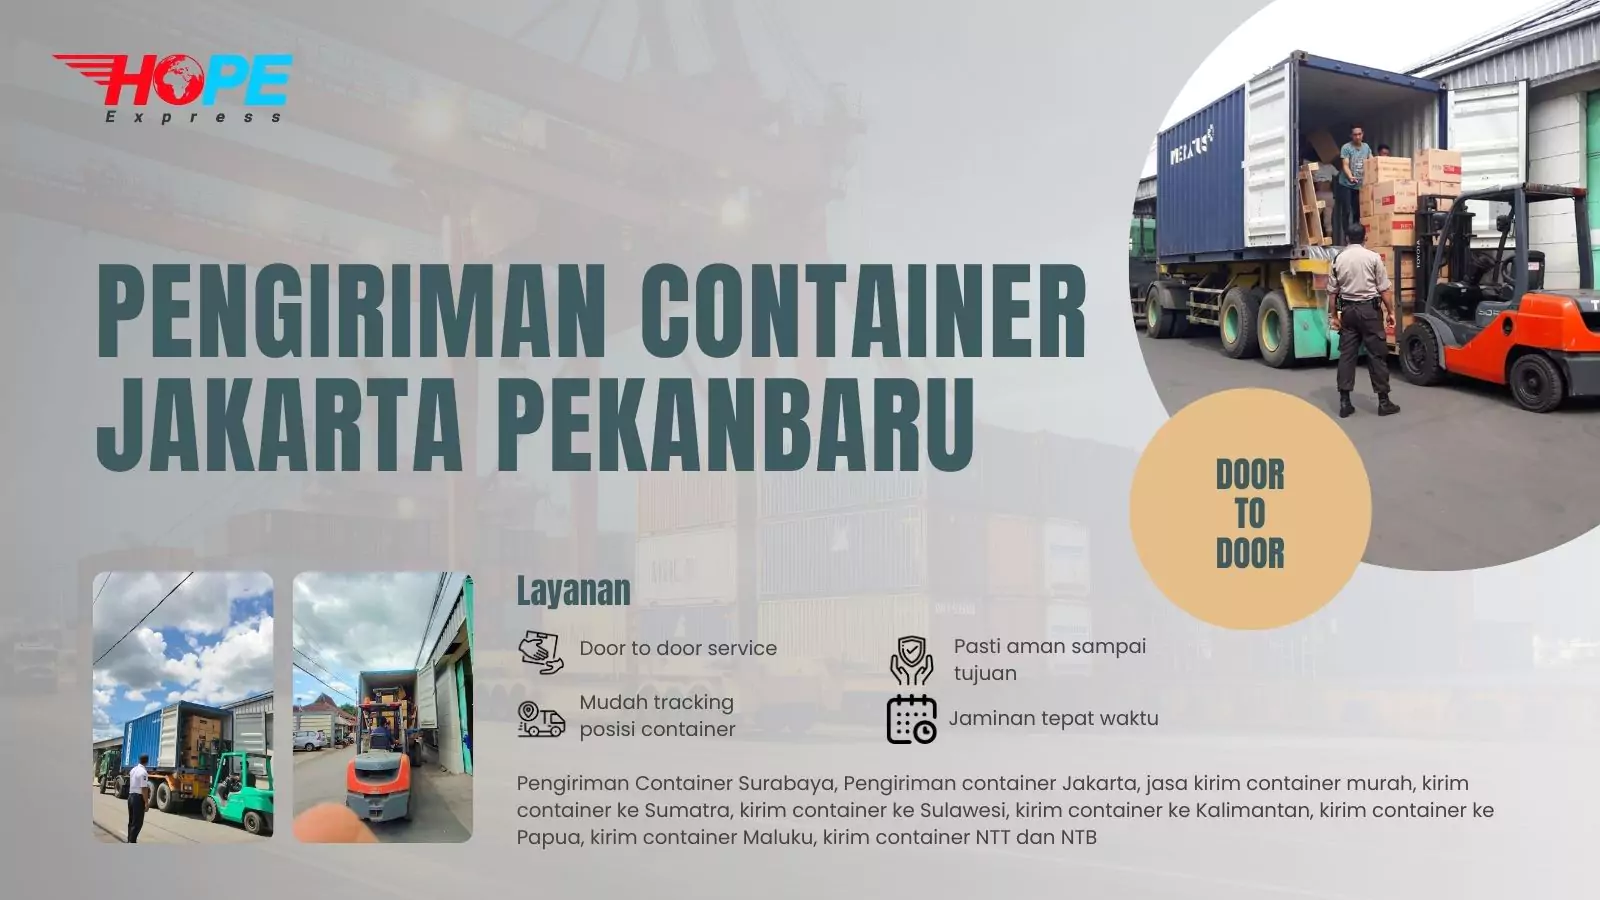 Pengiriman Container Jakarta Pekanbaru